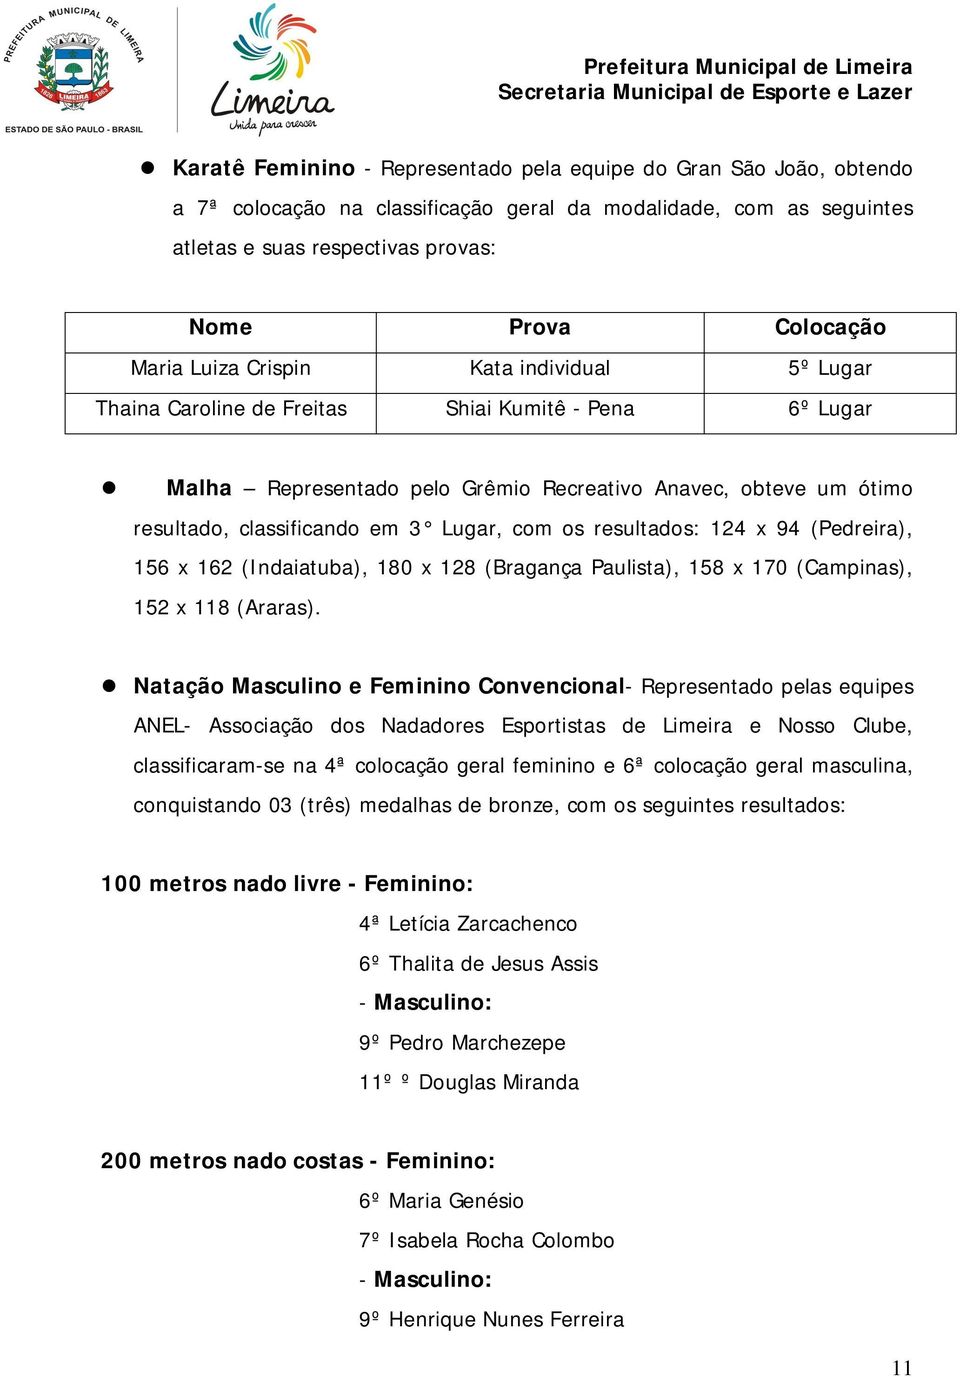 Lugar, com os resultados: 124 x 94 (Pedreira), 156 x 162 (Indaiatuba), 180 x 128 (Bragança Paulista), 158 x 170 (Campinas), 152 x 118 (Araras).